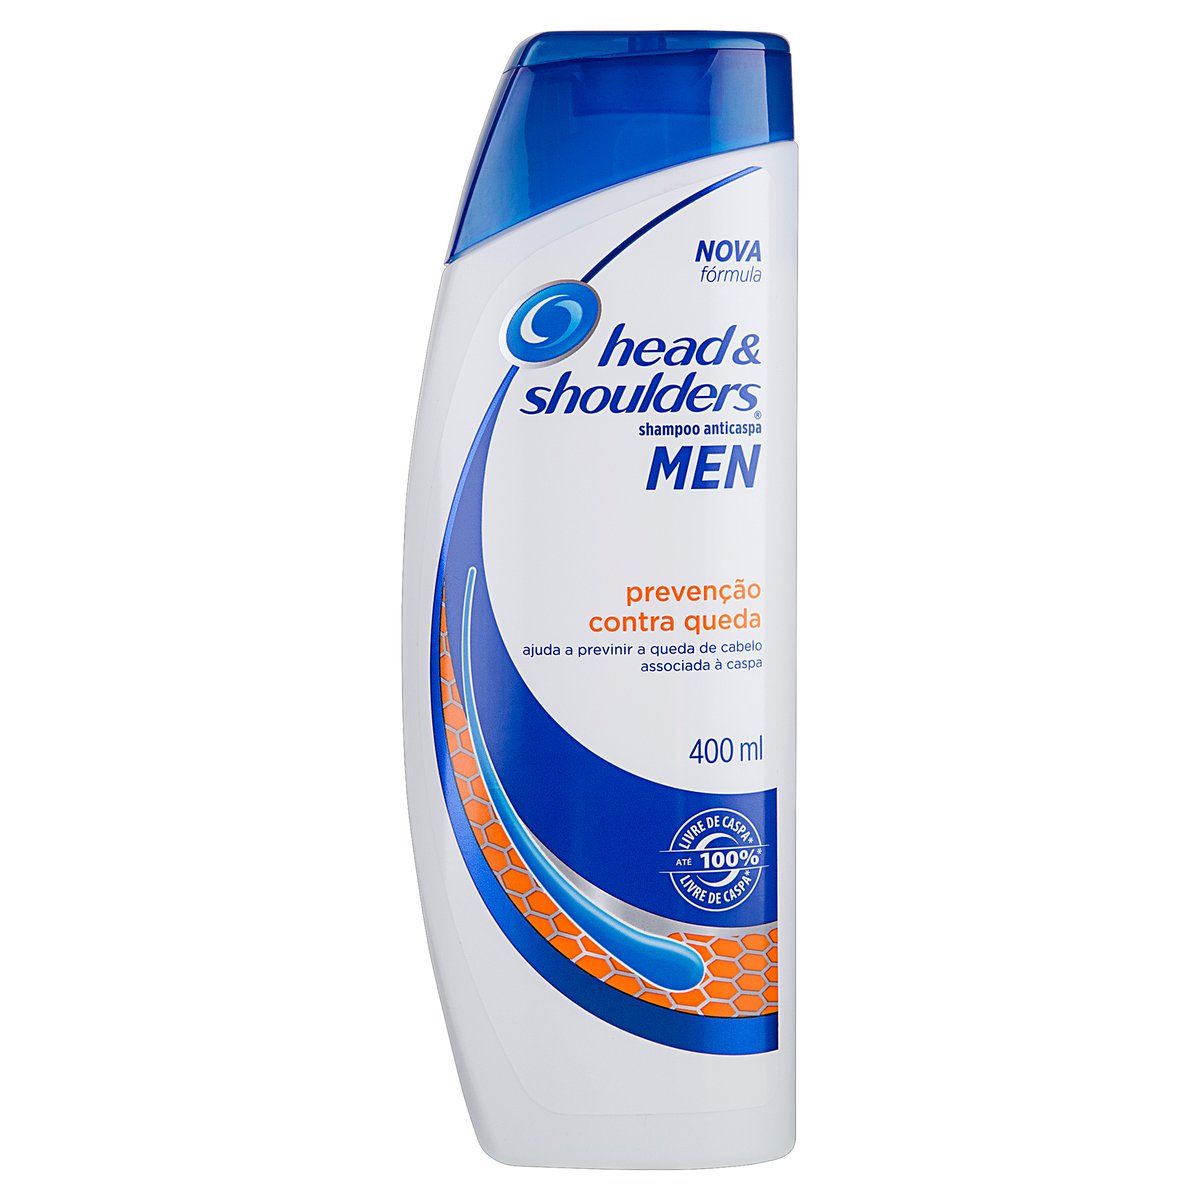 Shampoo Anticaspa Head & Shoulders Men Prevenção Contra Queda 400ml